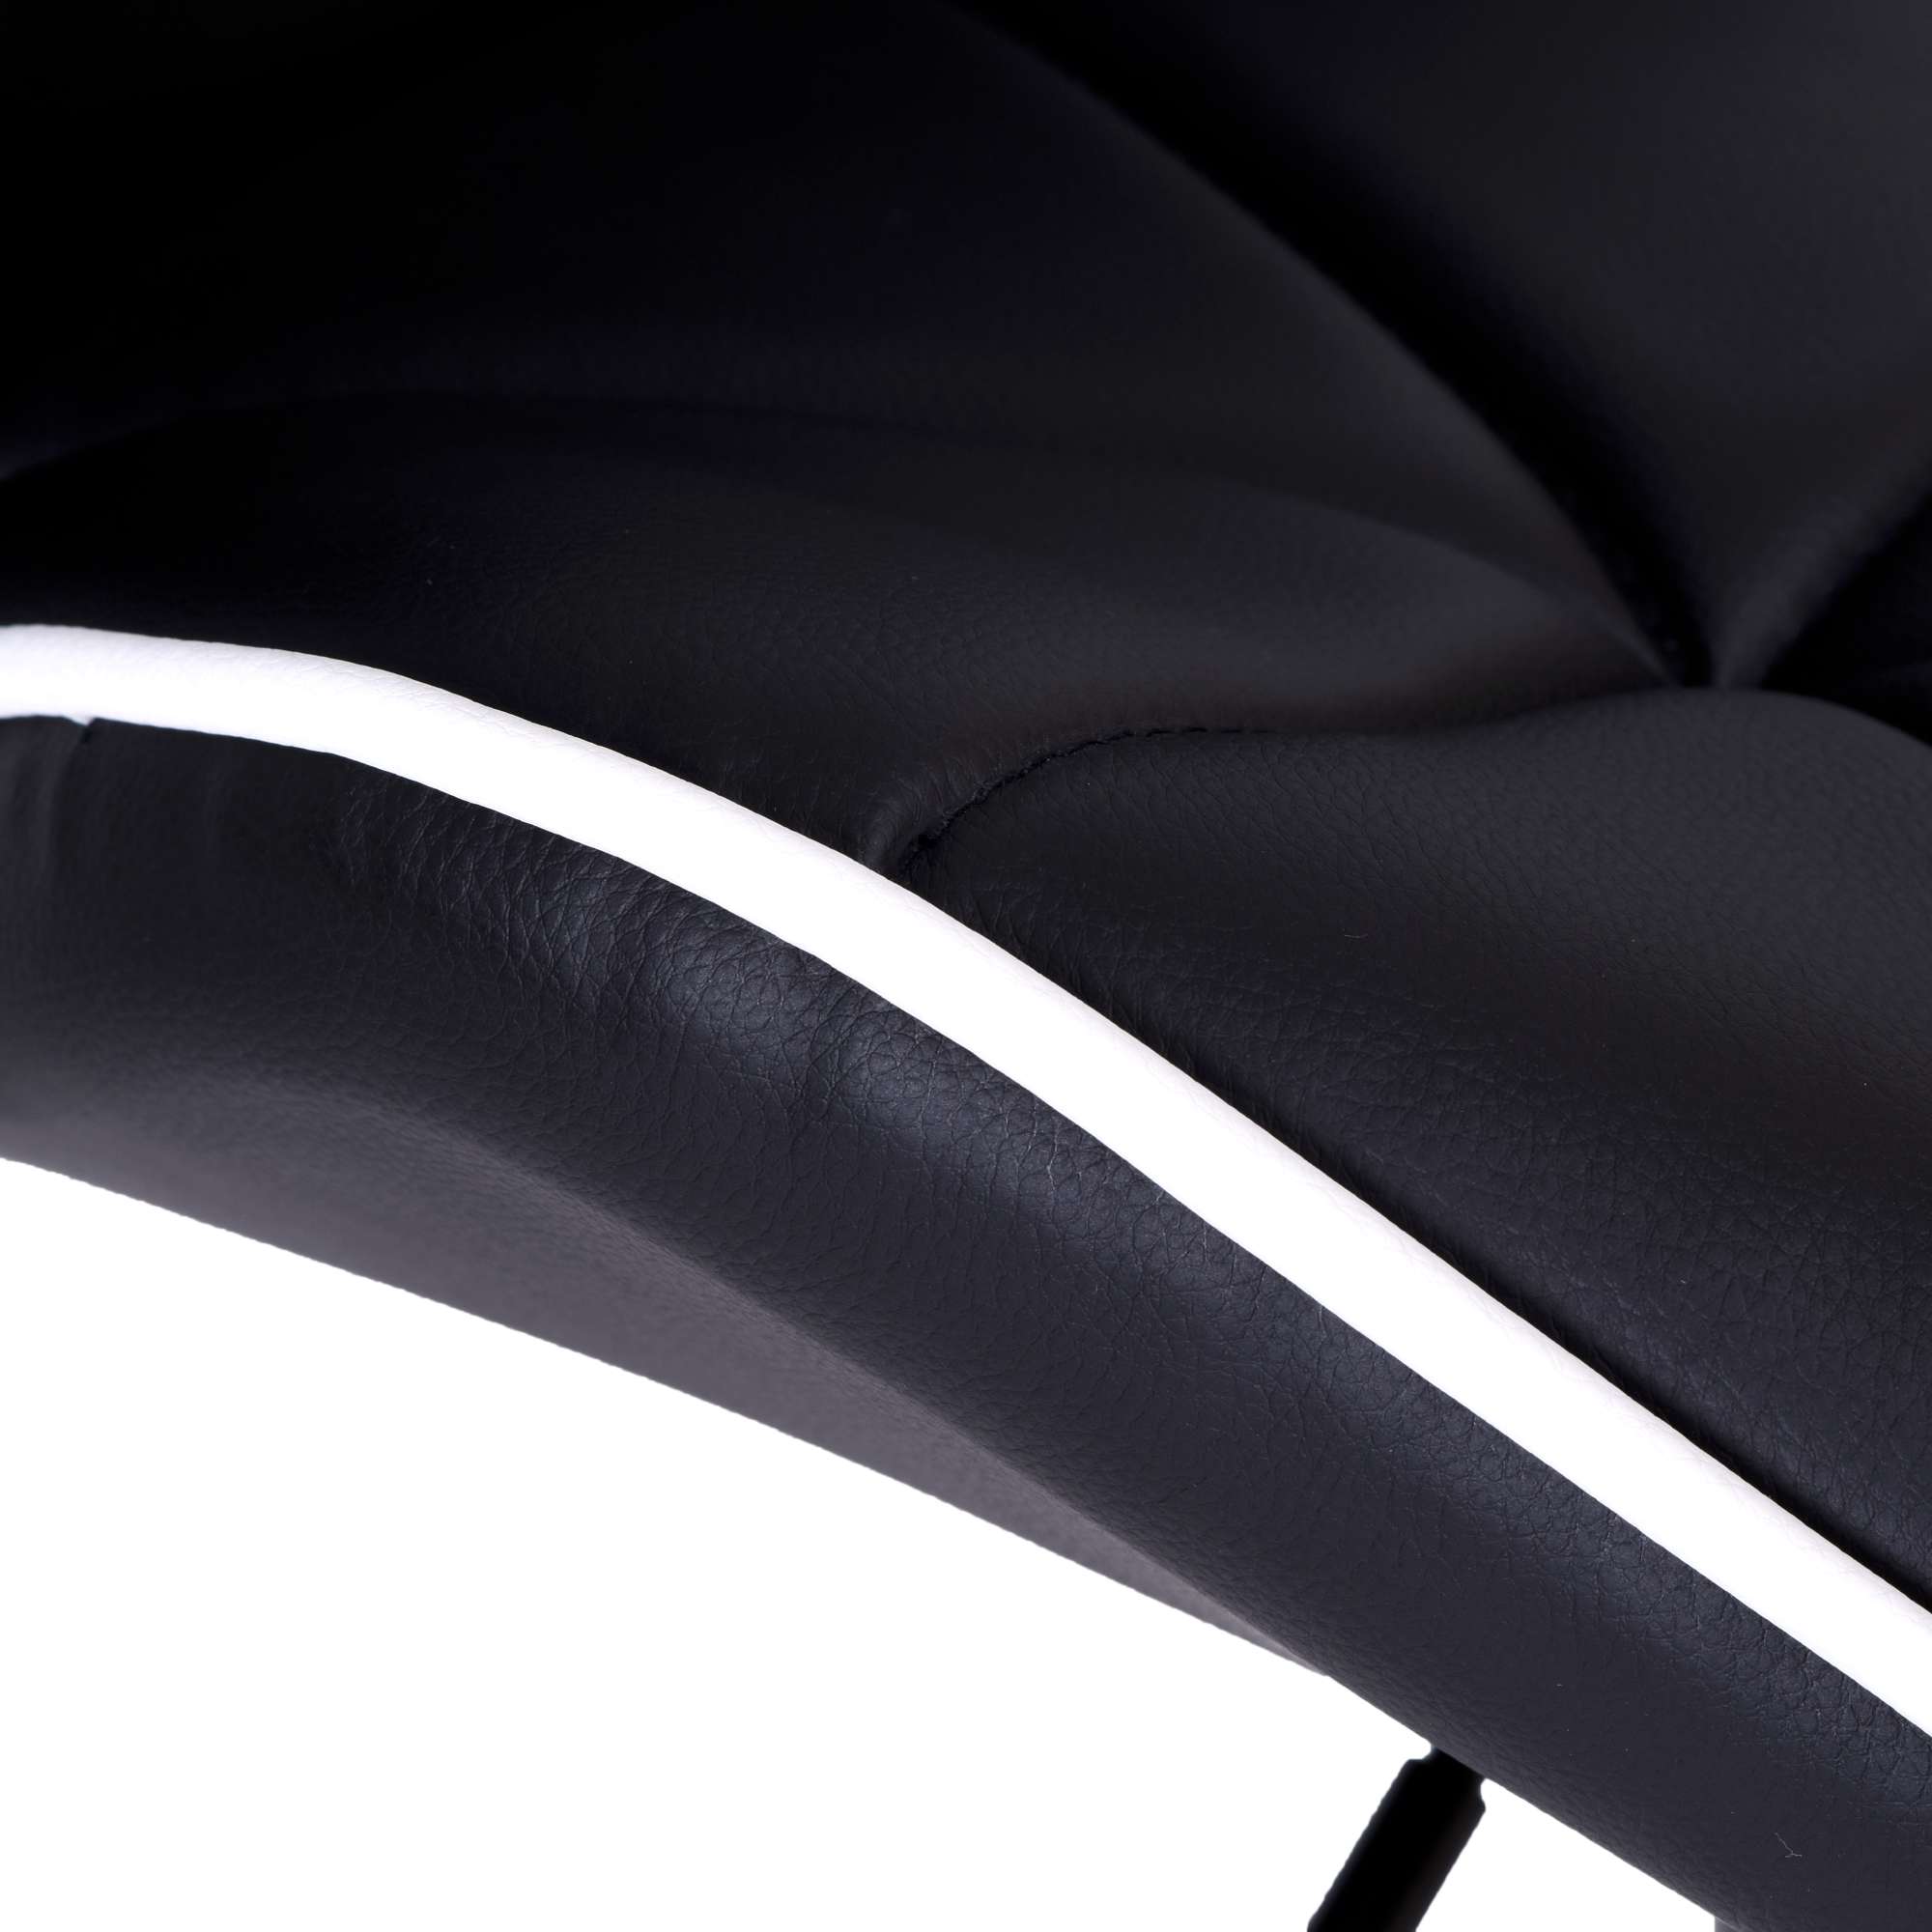 Krzesło barowe GRAPPO BLACK czarne